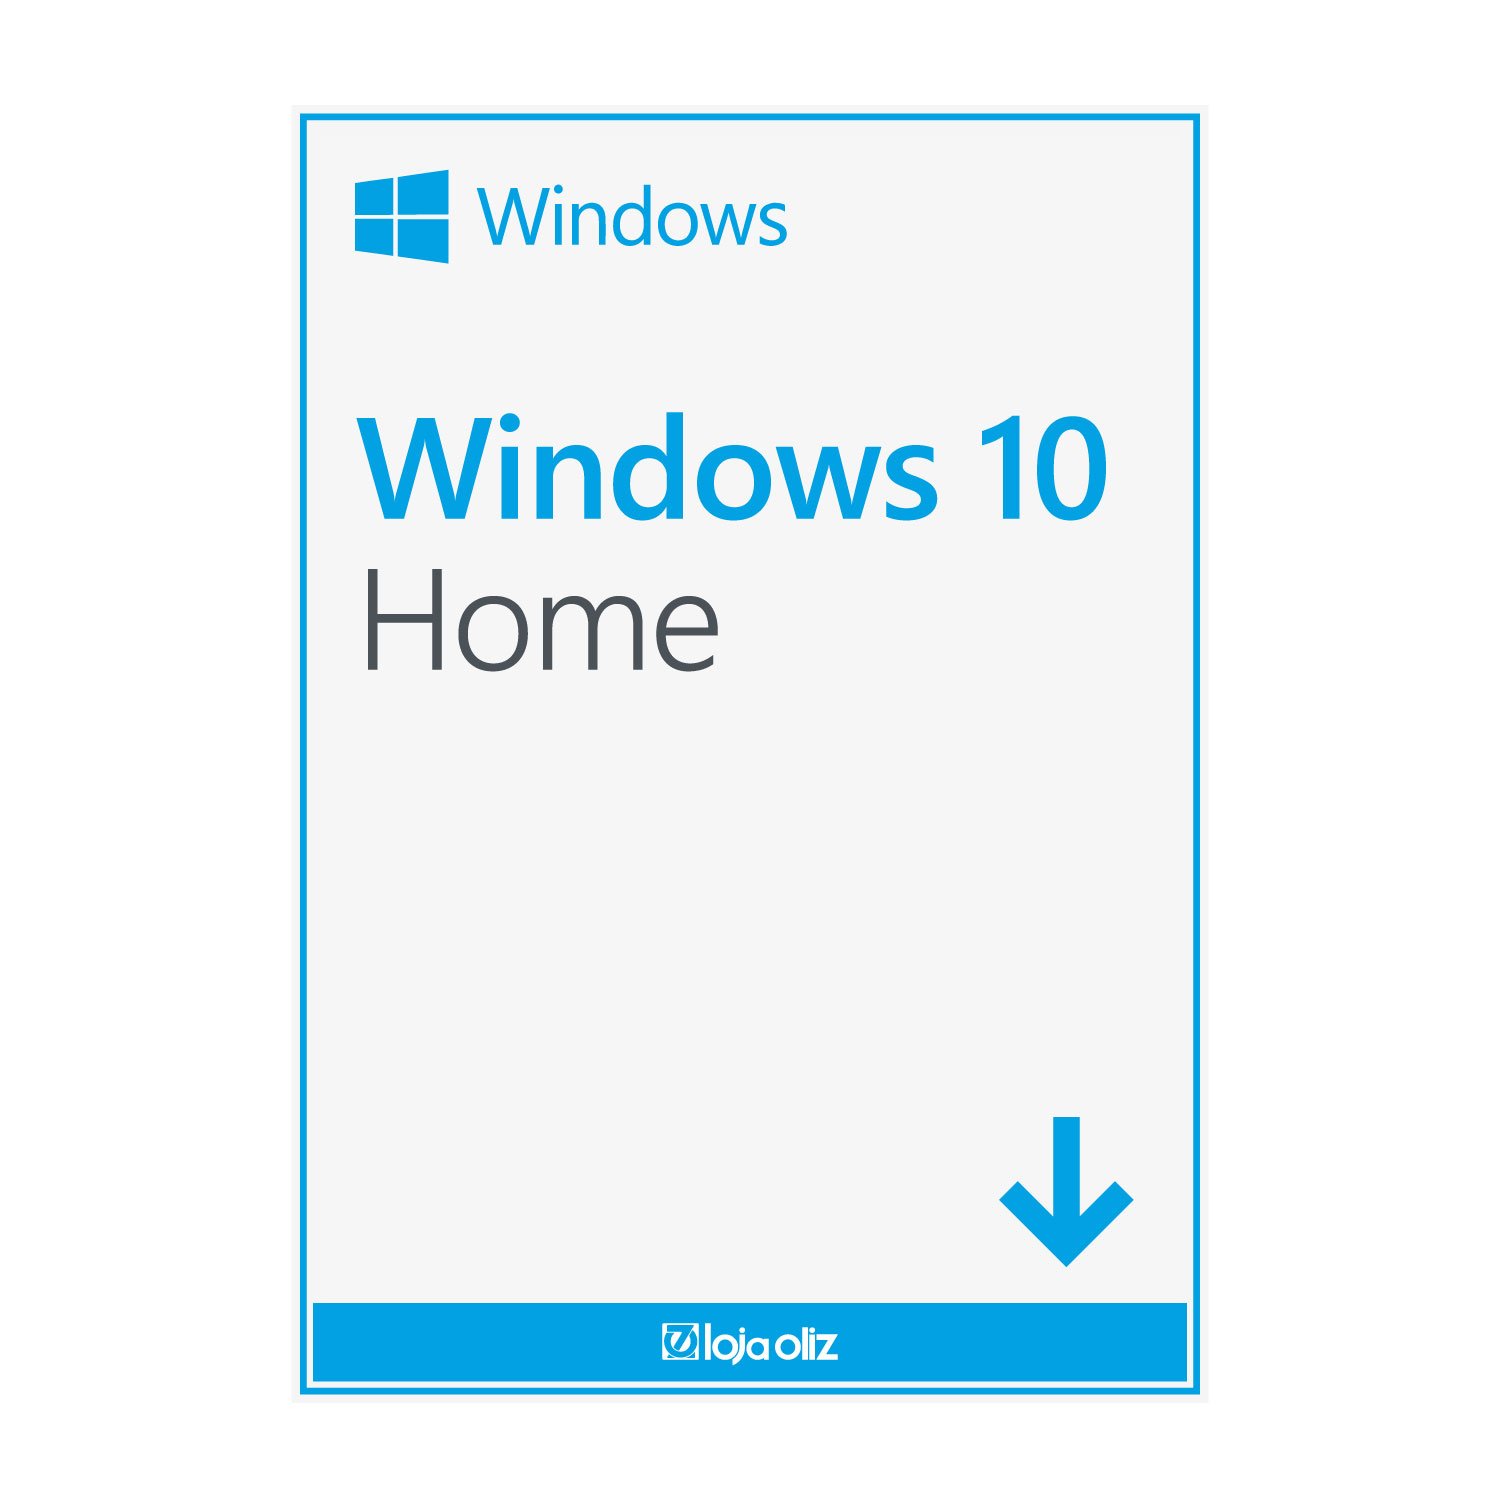 O Windows 10 me diz para usar um aplicativo verificado pela Microsoft